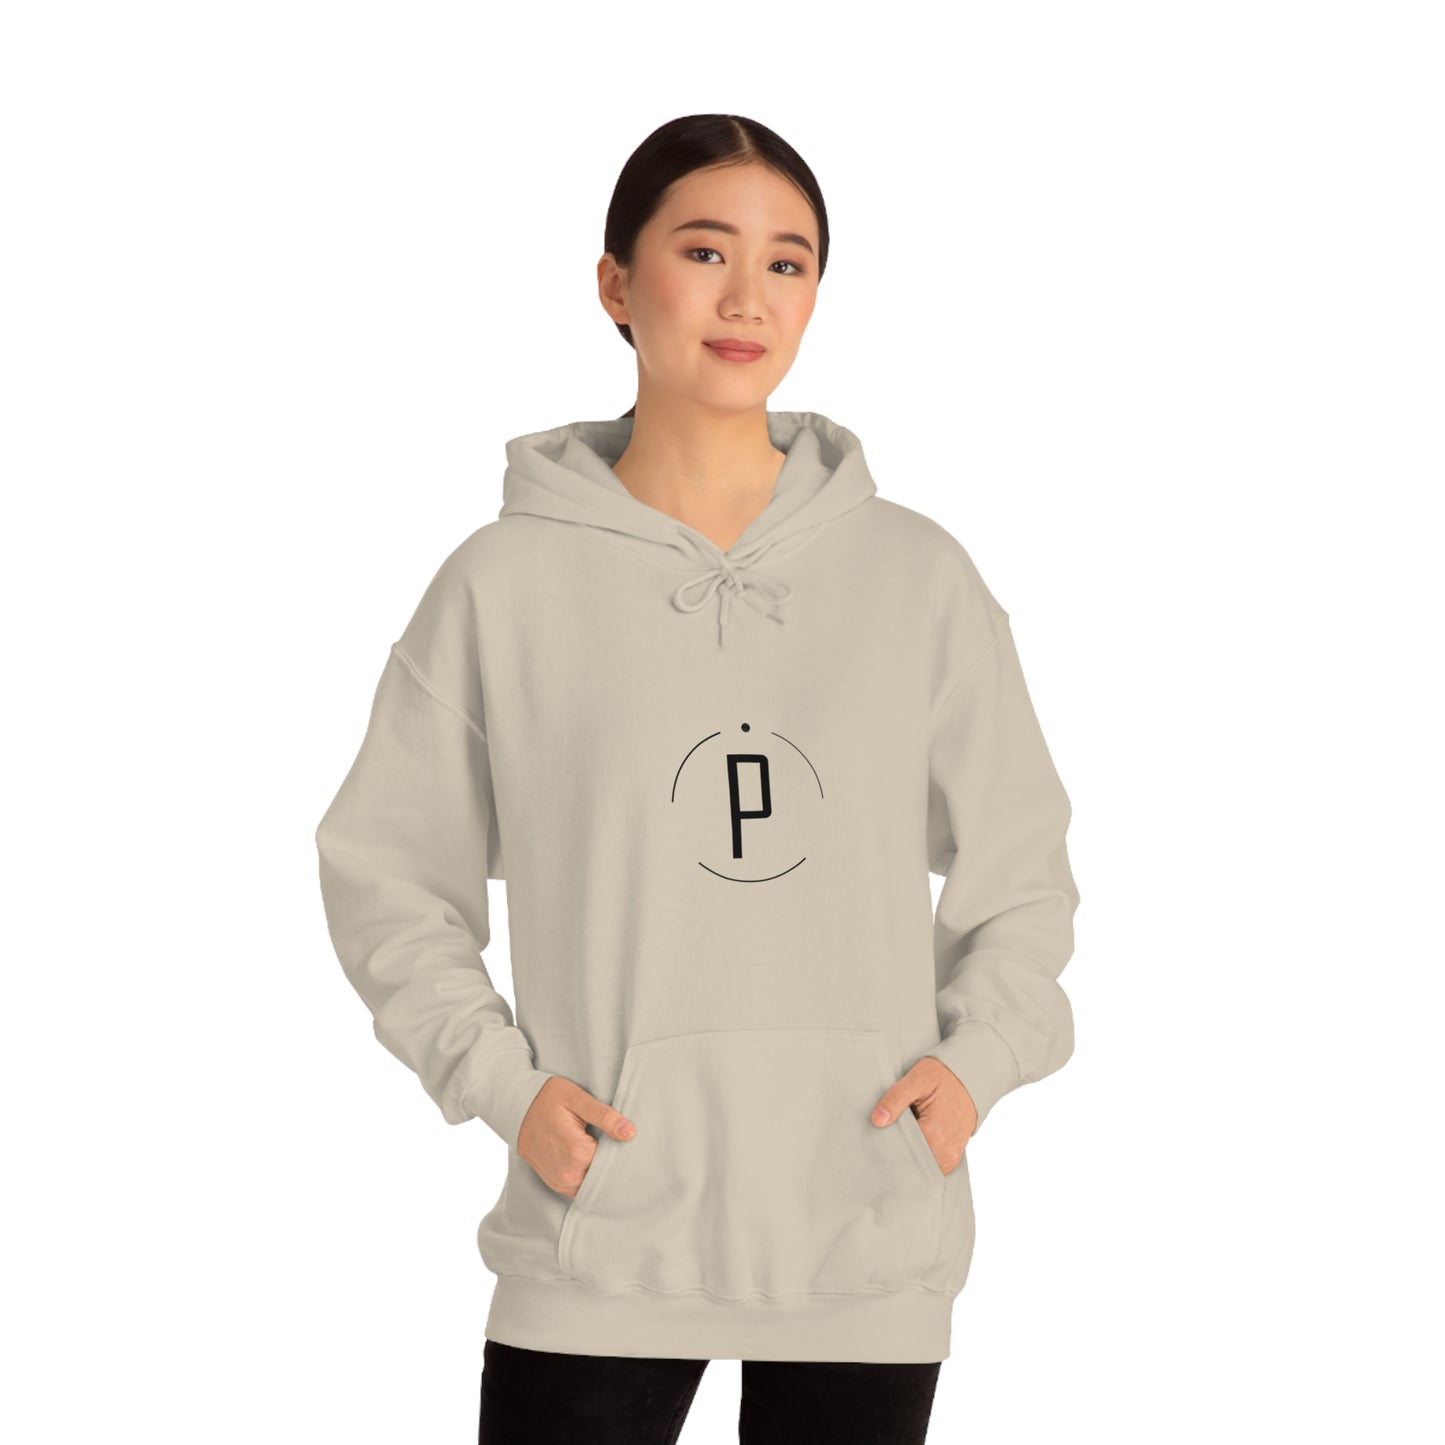 Padel Unisex Hooded Sweatshirt